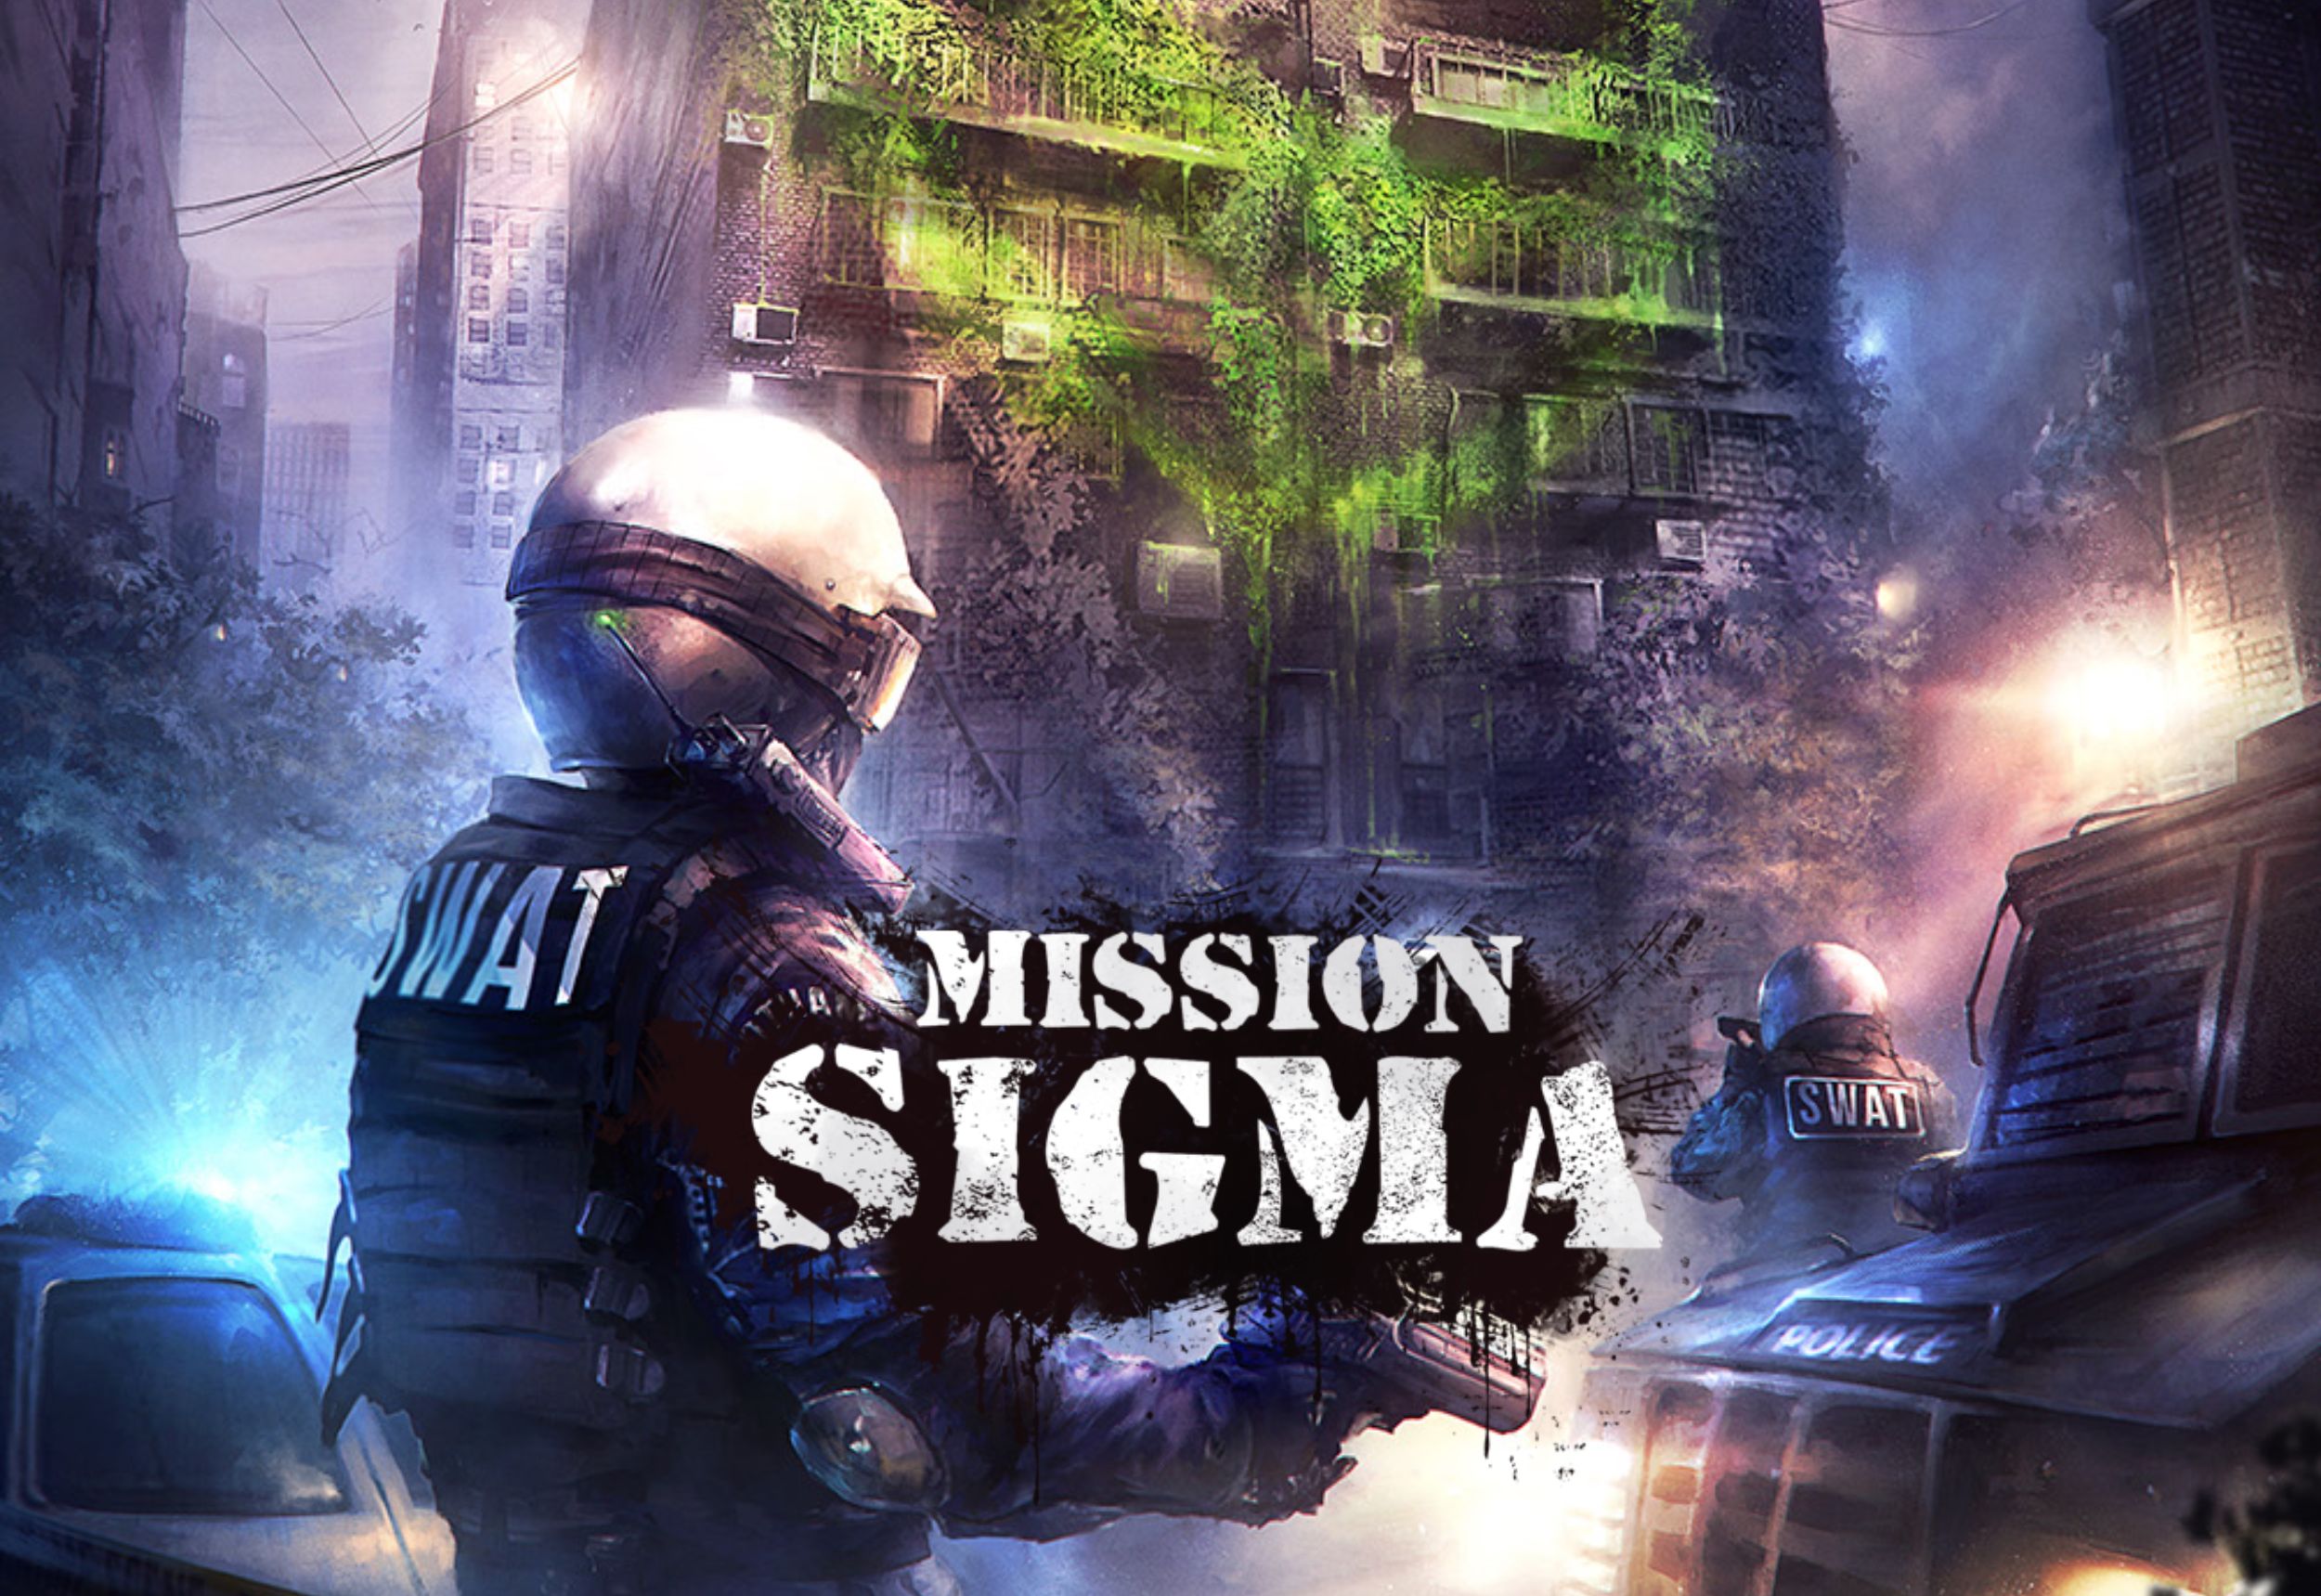 Mission Sigma